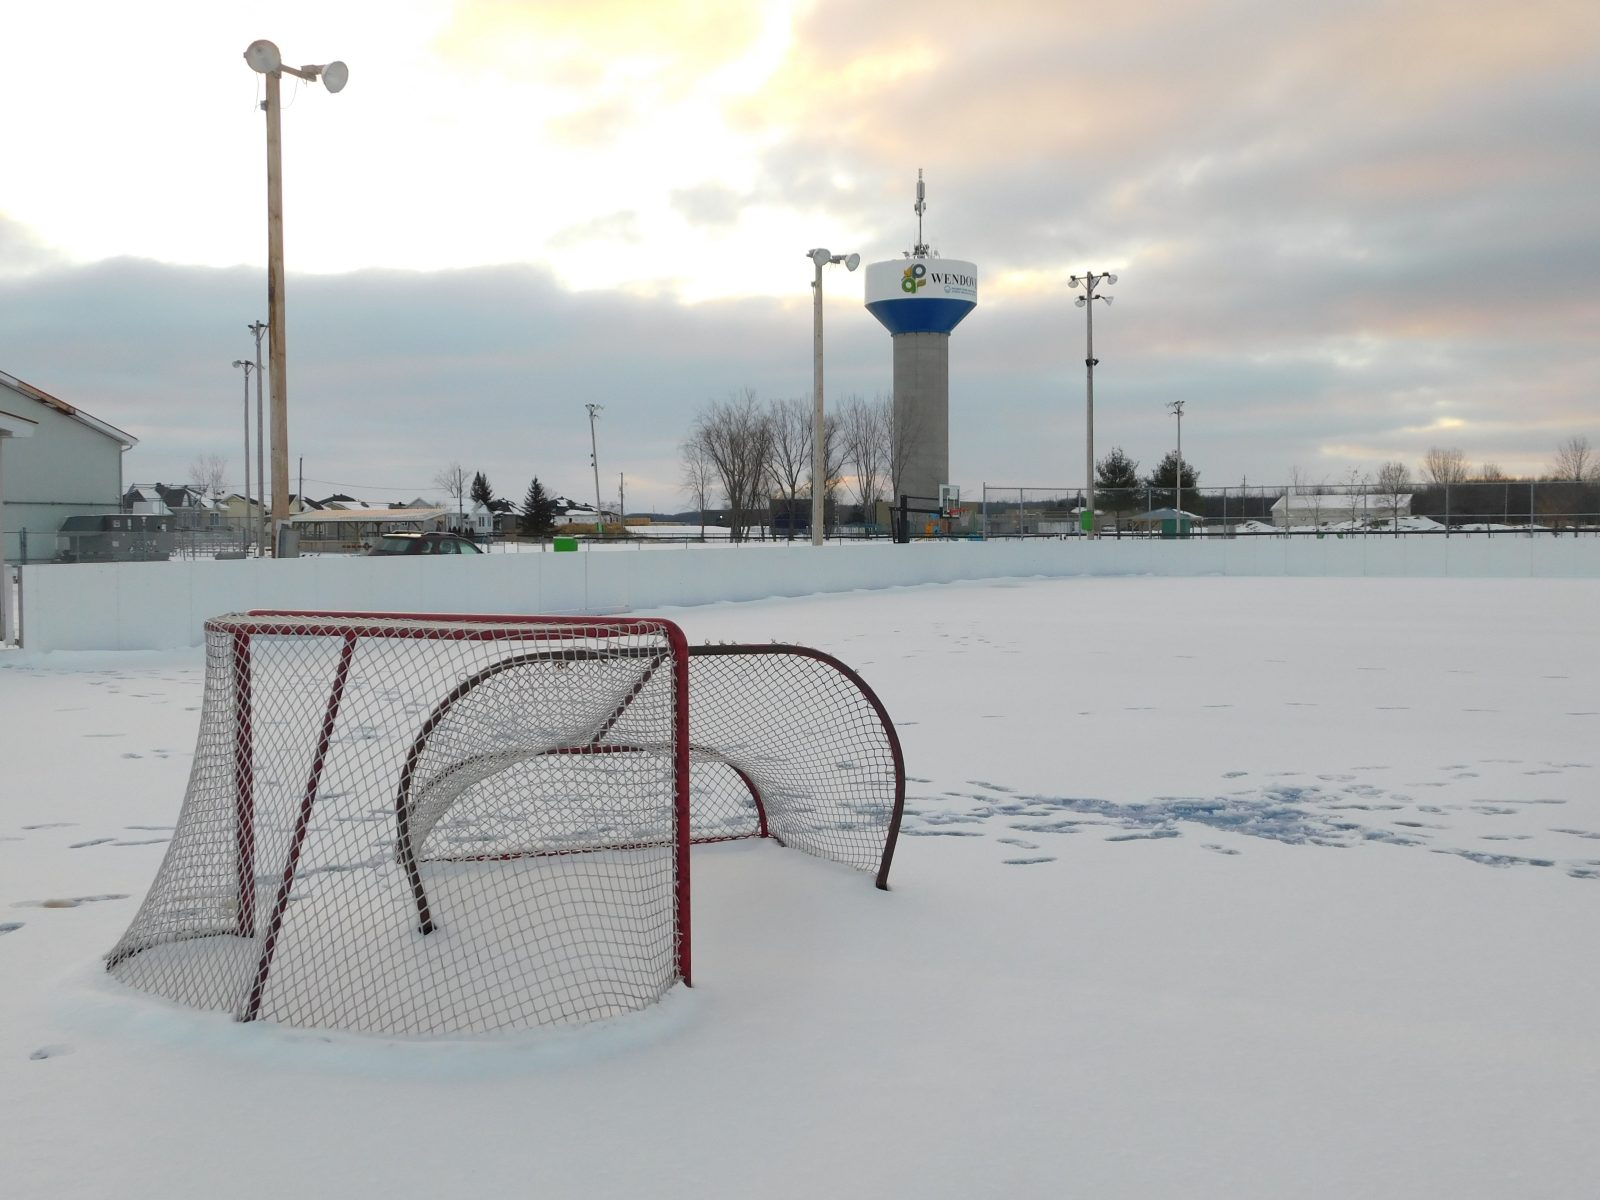 Les patinoires seront ouvertes cet hiver